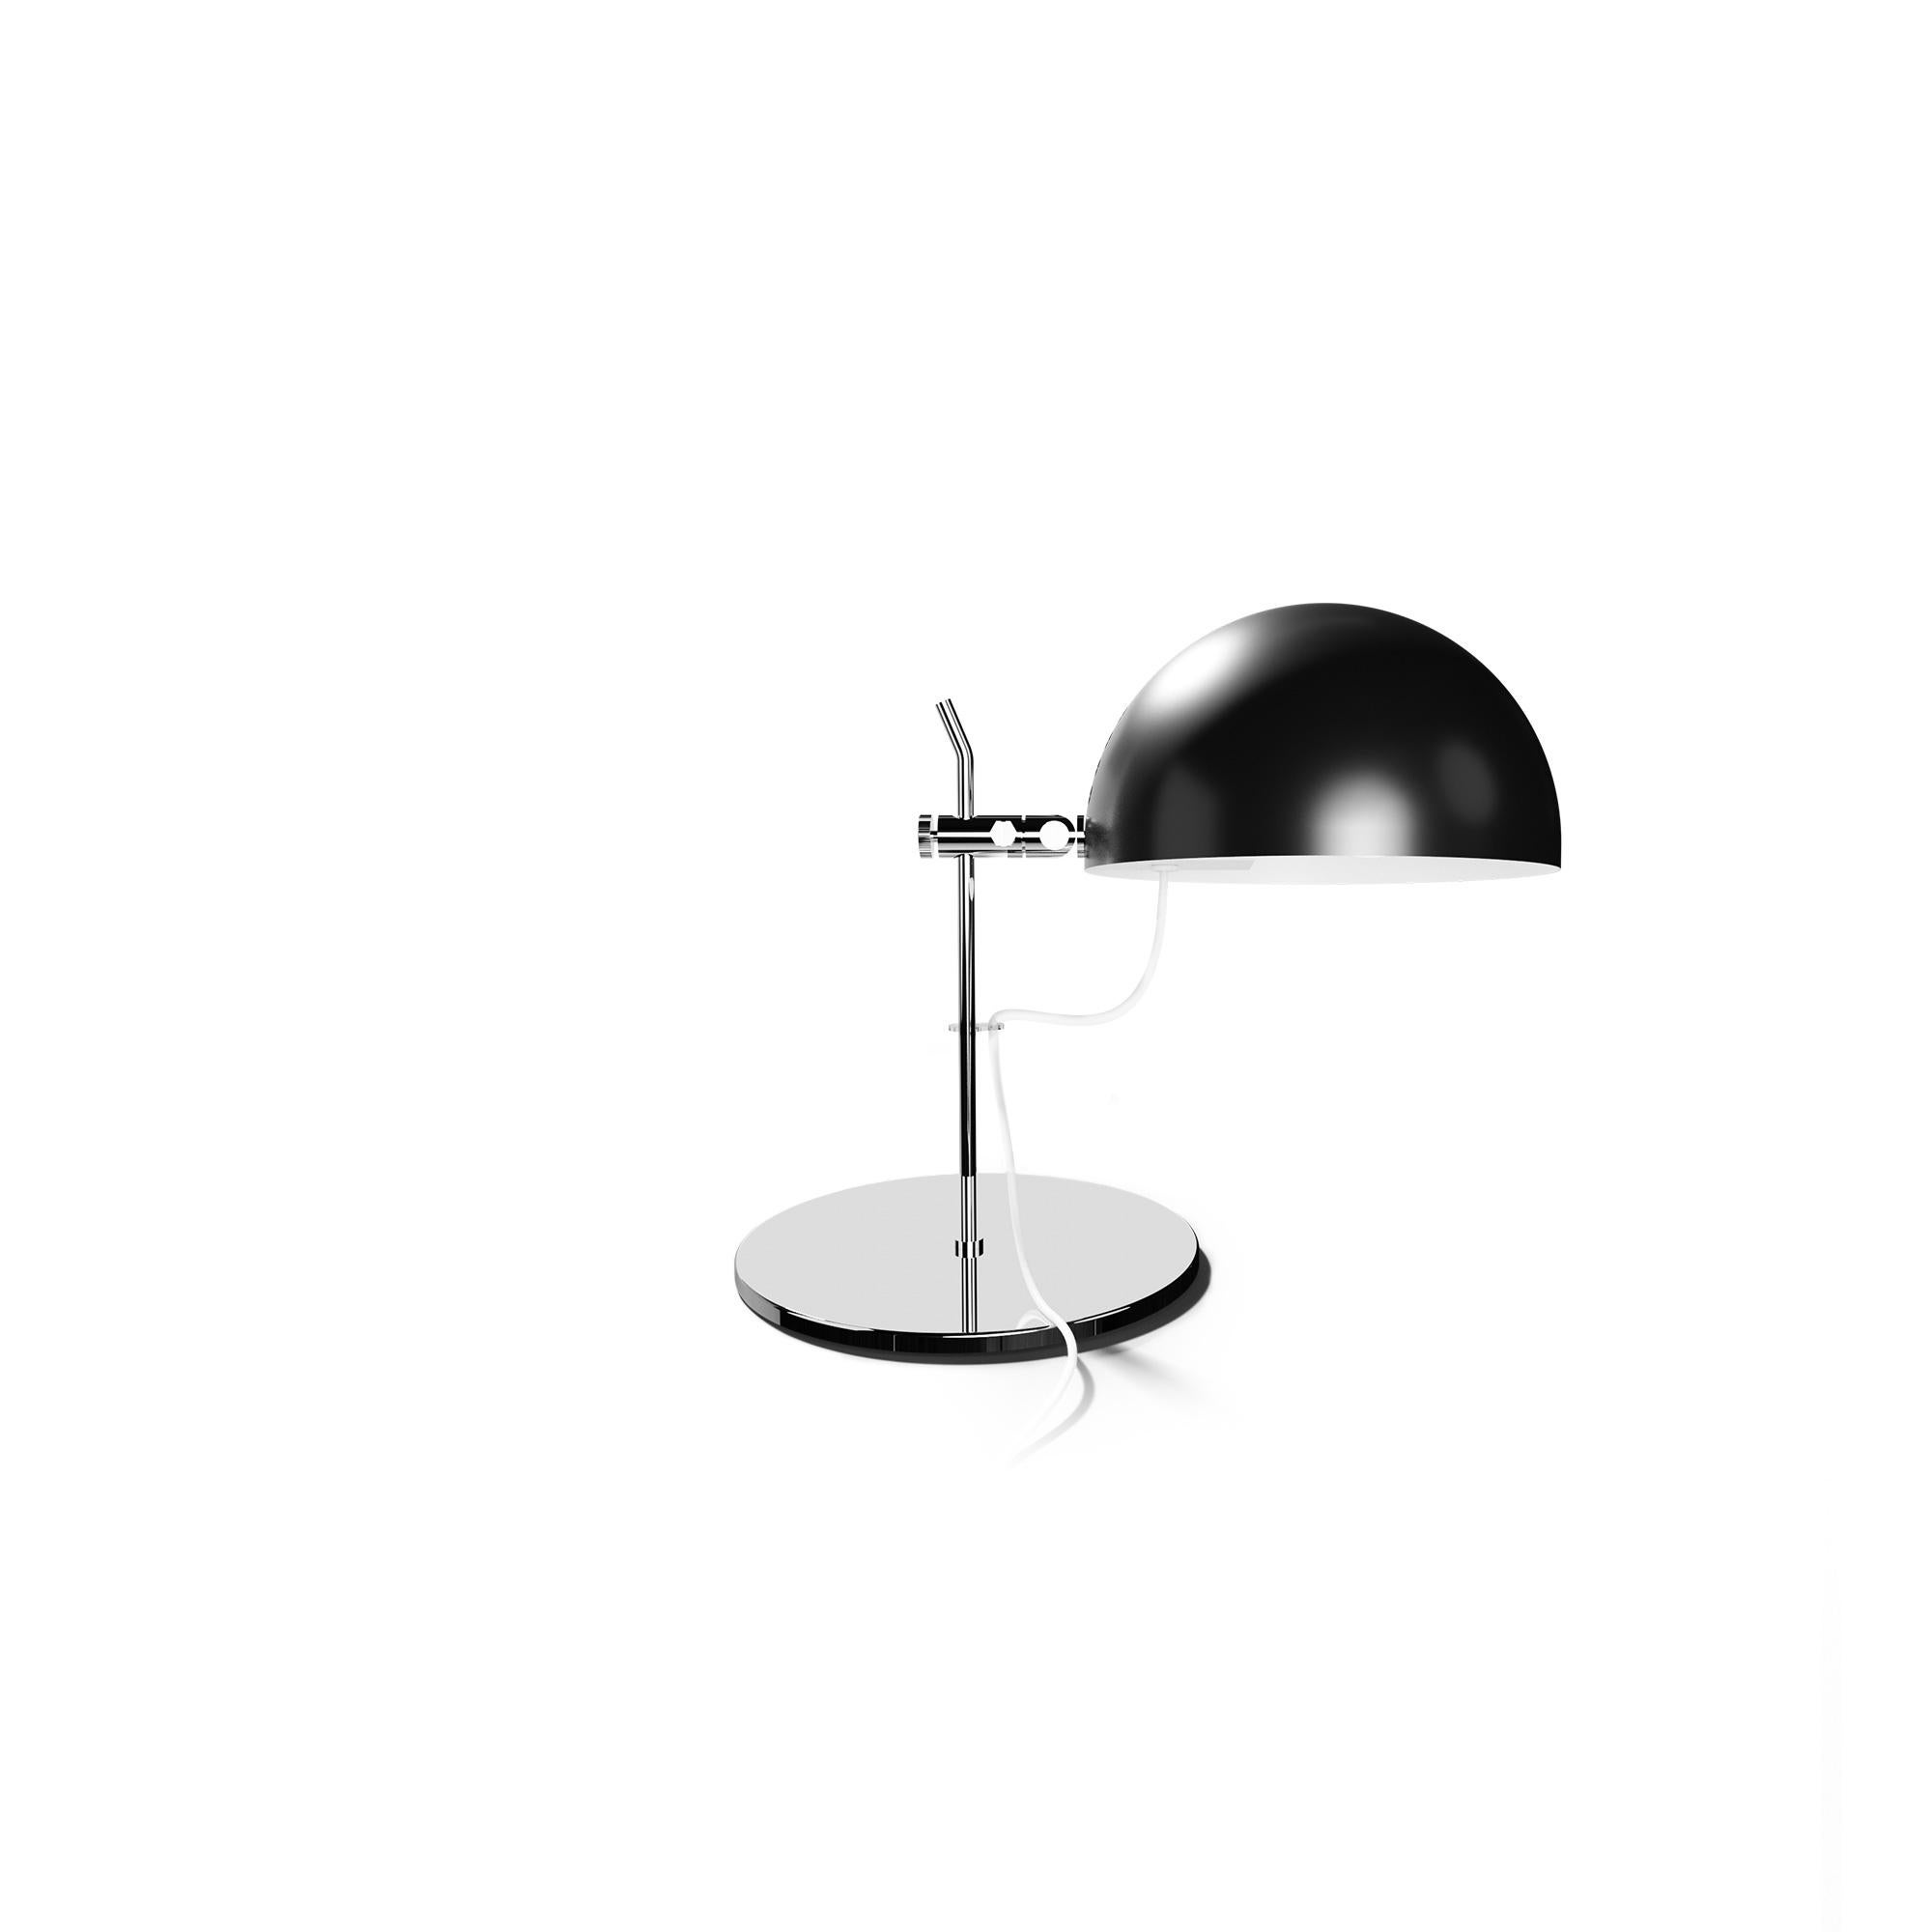 Alain Richard 'A21' Desk Lamp in Black for Disderot For Sale 6